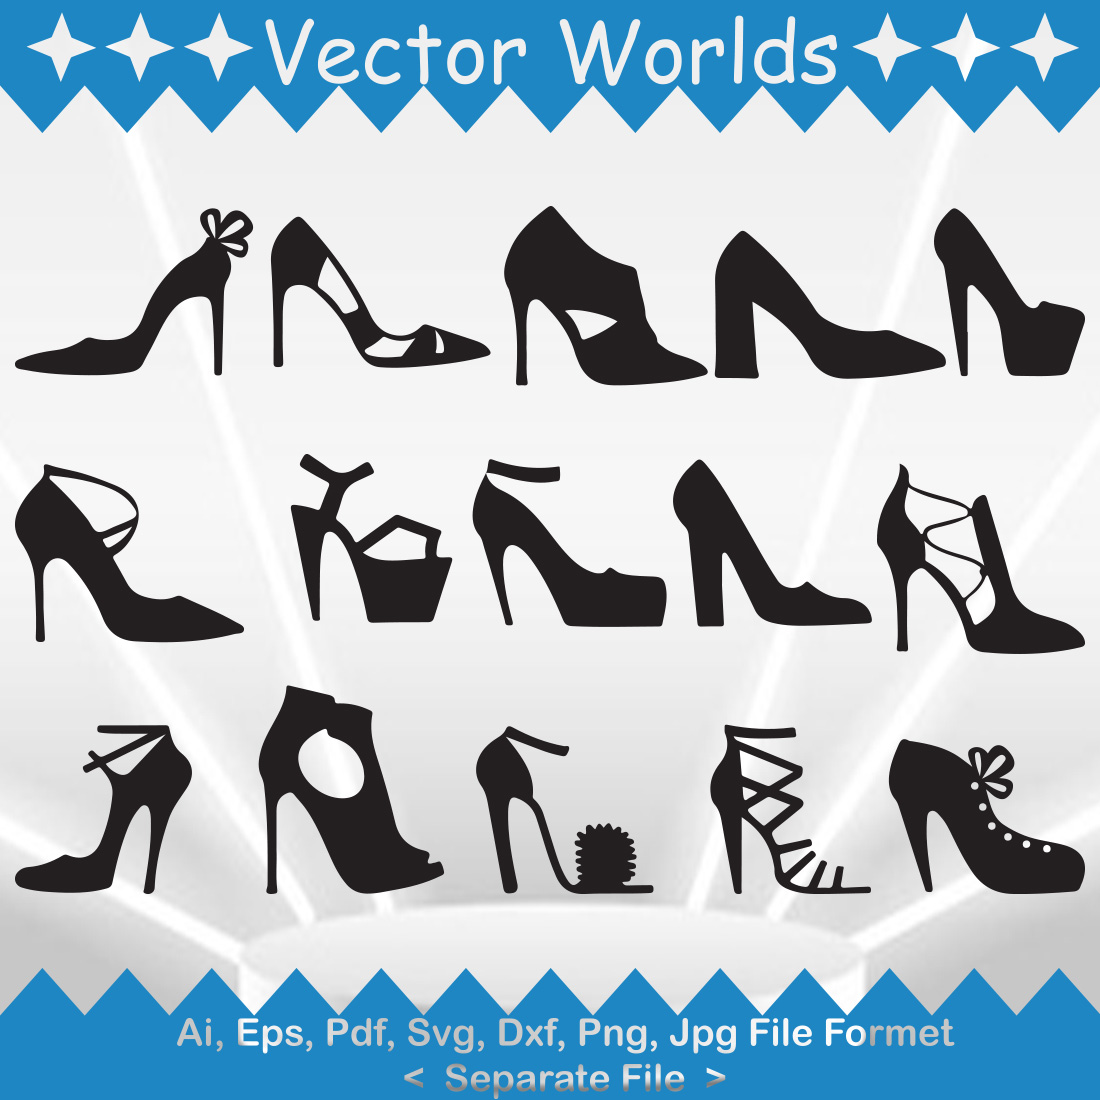 Petit Cadeau Women's Patent High Heel Shoes Stiletto Pumps Shoes Black Size  6 | eBay